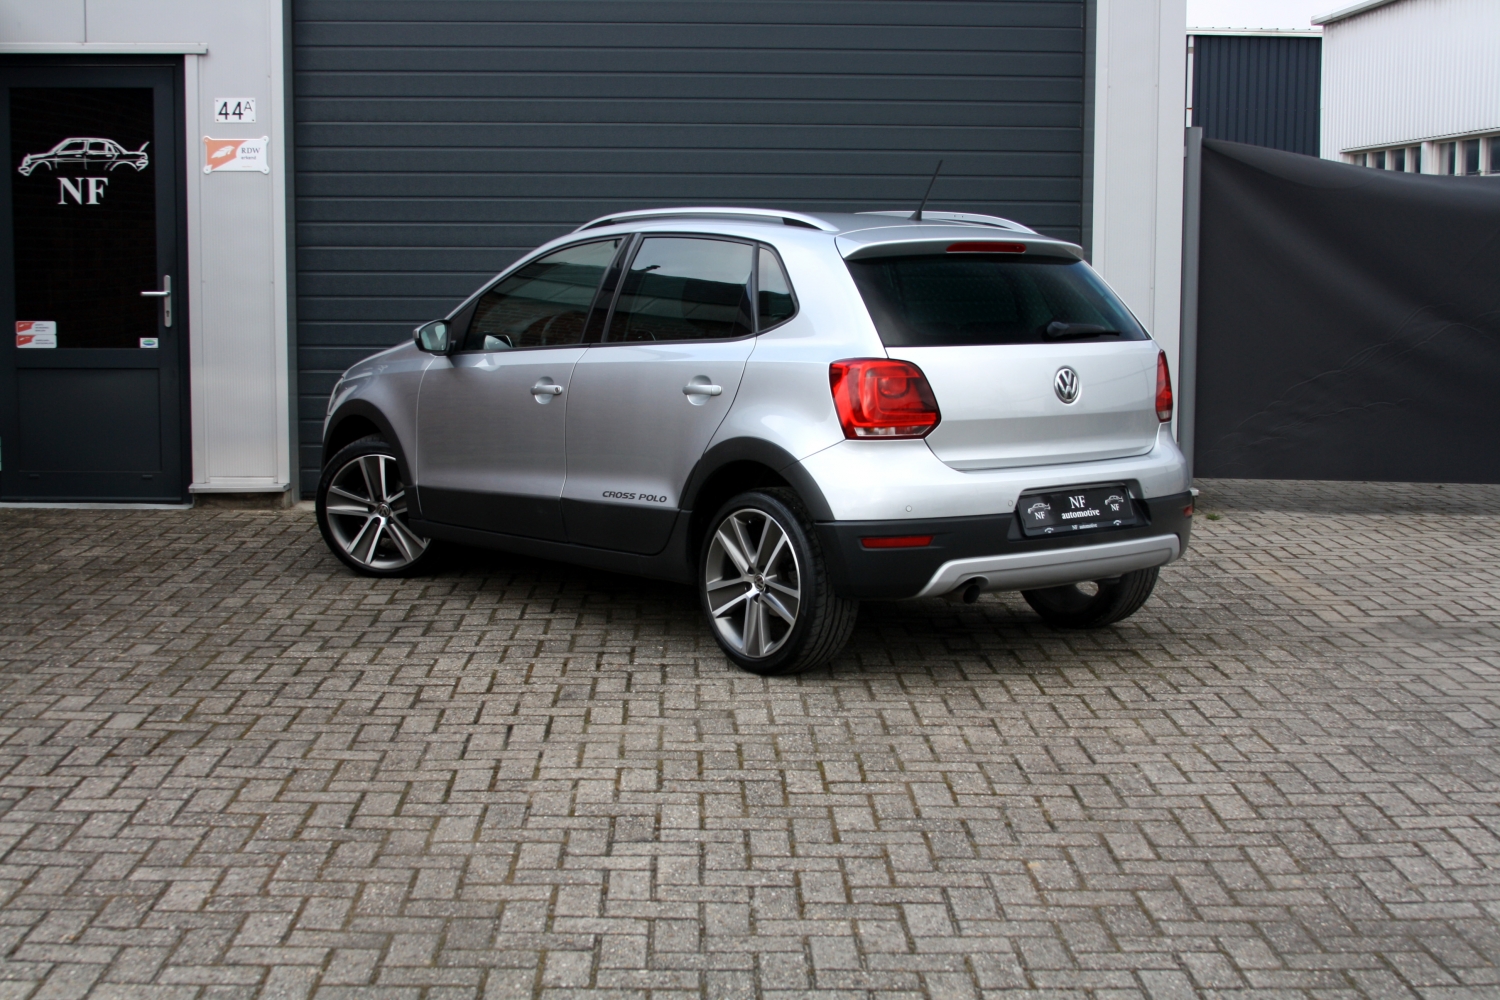 Oppervlakte Moeras Groene bonen Volkswagen Polo Cross Crosspolo 1.6TDI kopen bij NF Automotive